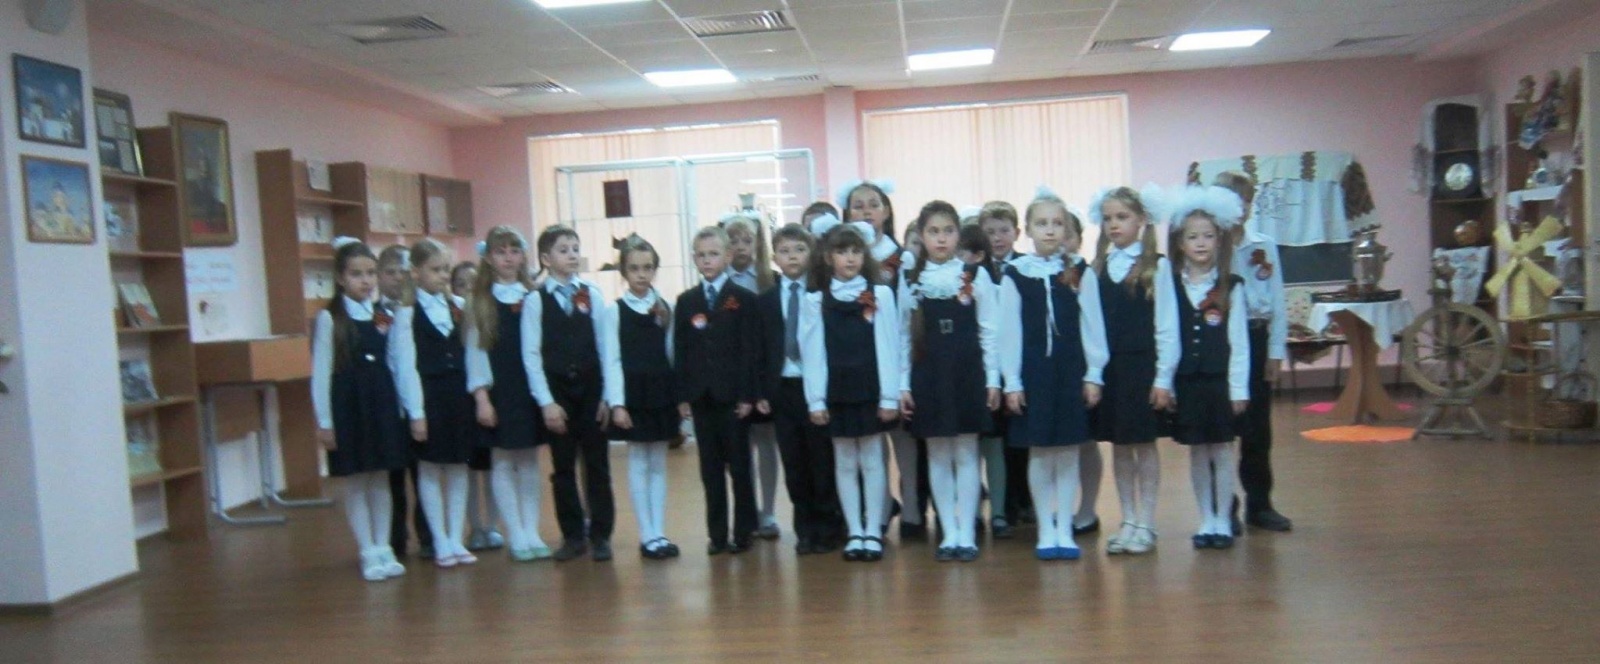 Школьники выступили с концертом в отделении дневного пребывания "Ерино"